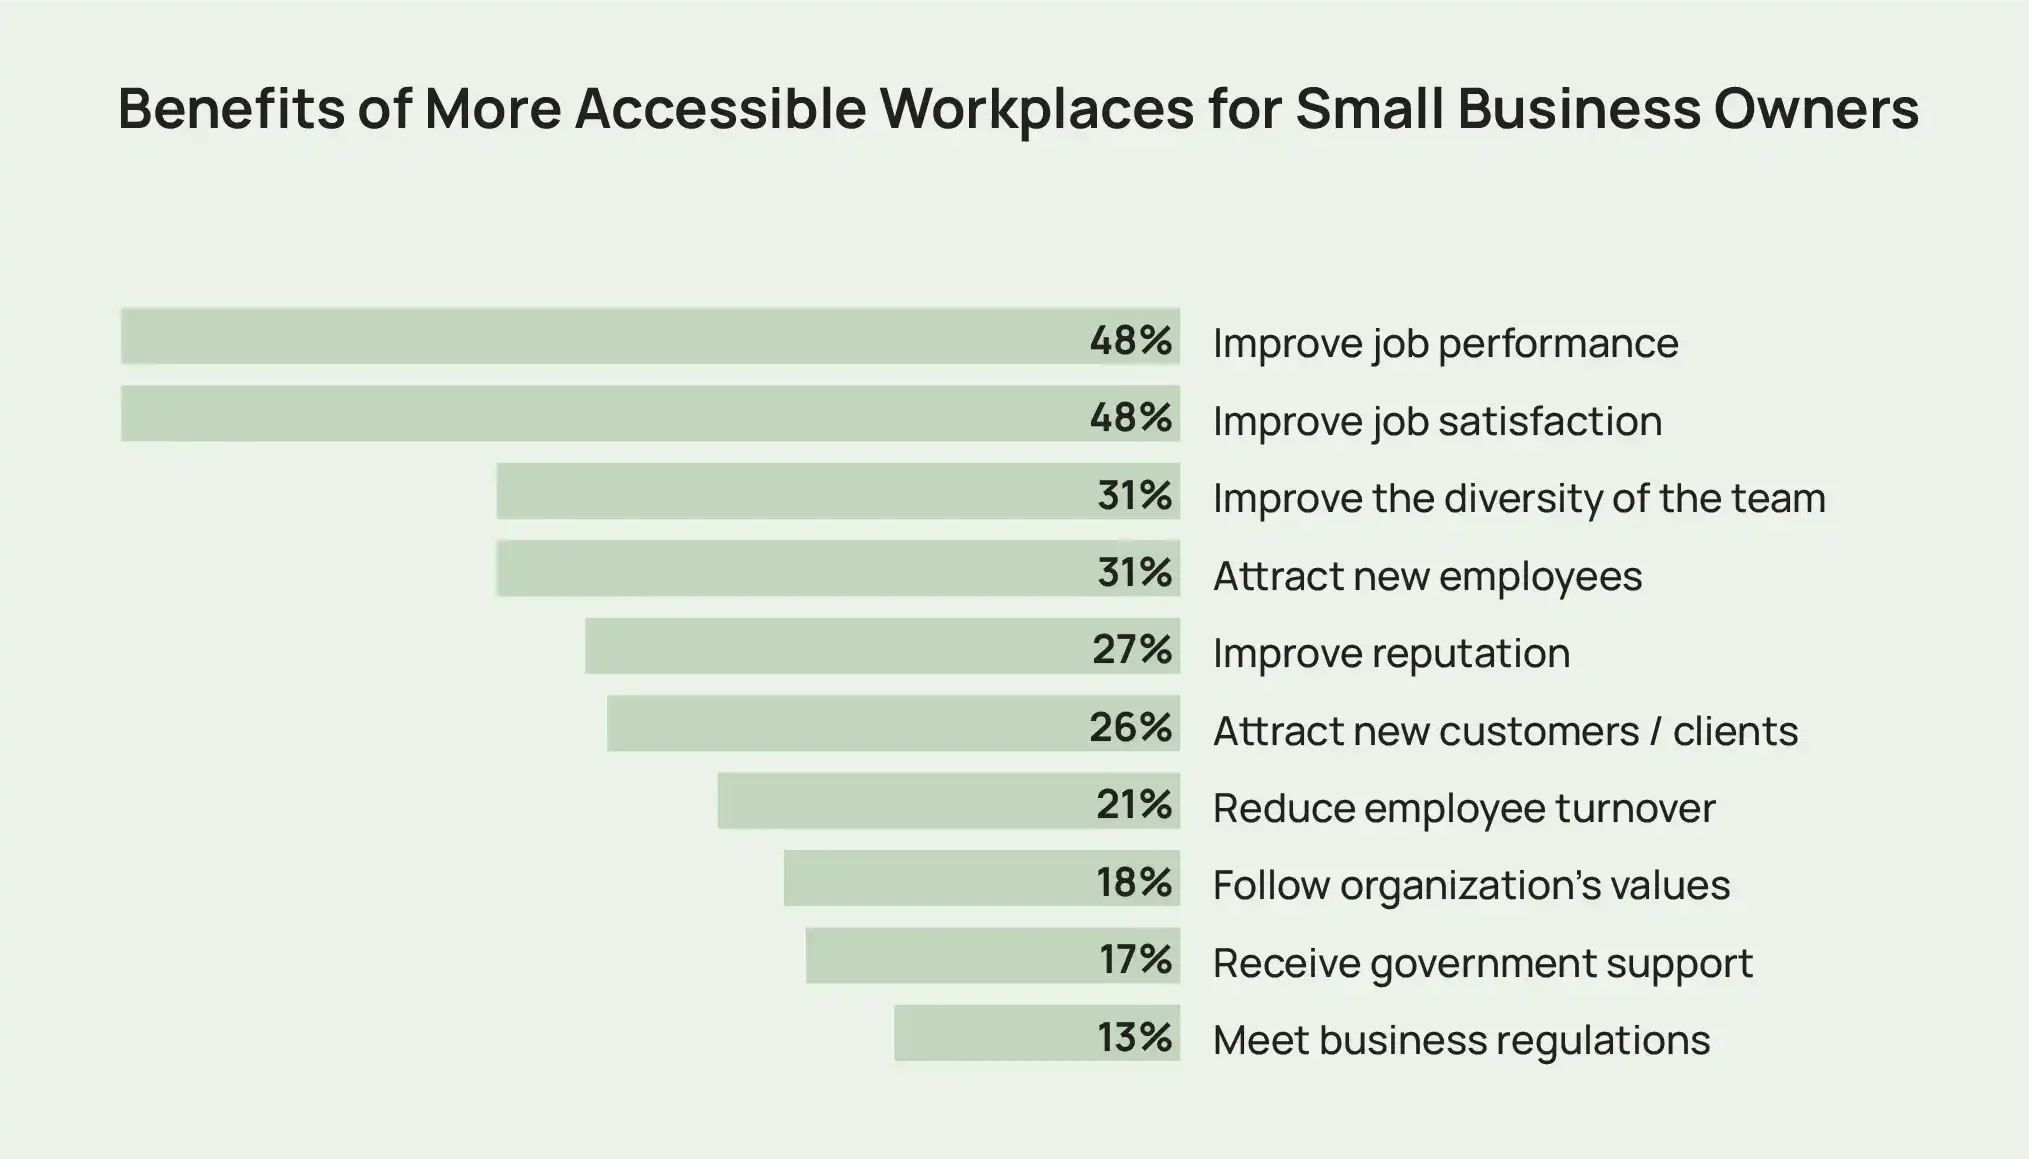 長條圖顯示了小型企業主更便利的工作場所的好處範例，包括提高工作績效和滿意度。